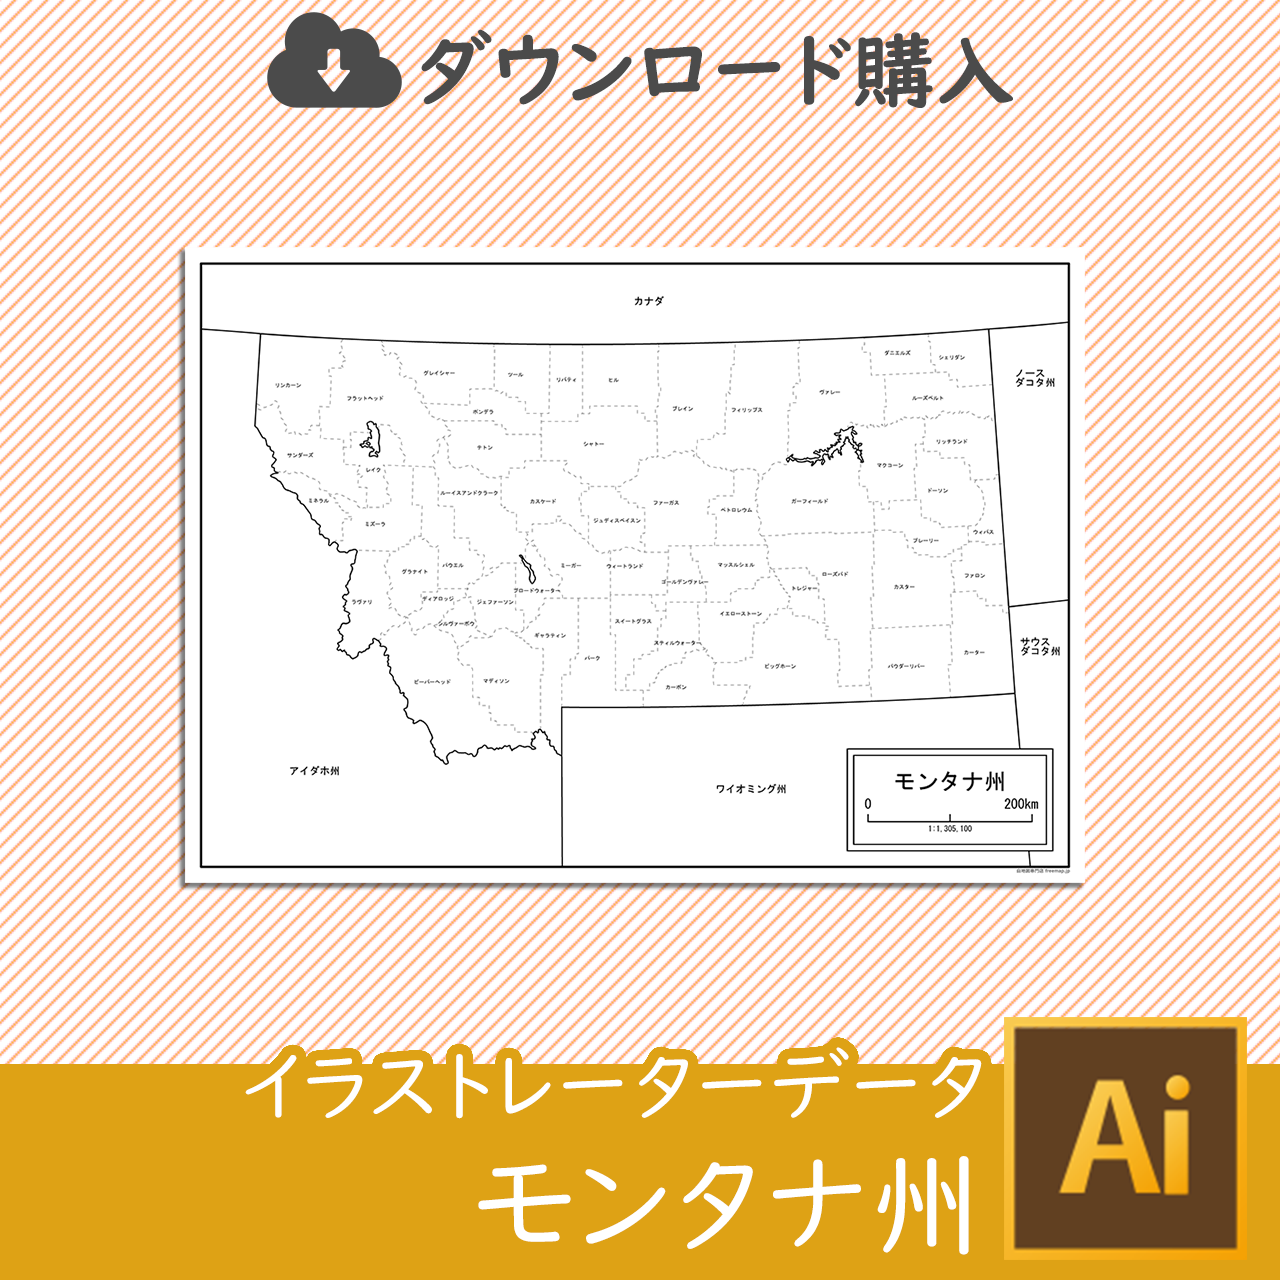 モンタナ州の白地図データのサムネイル画像